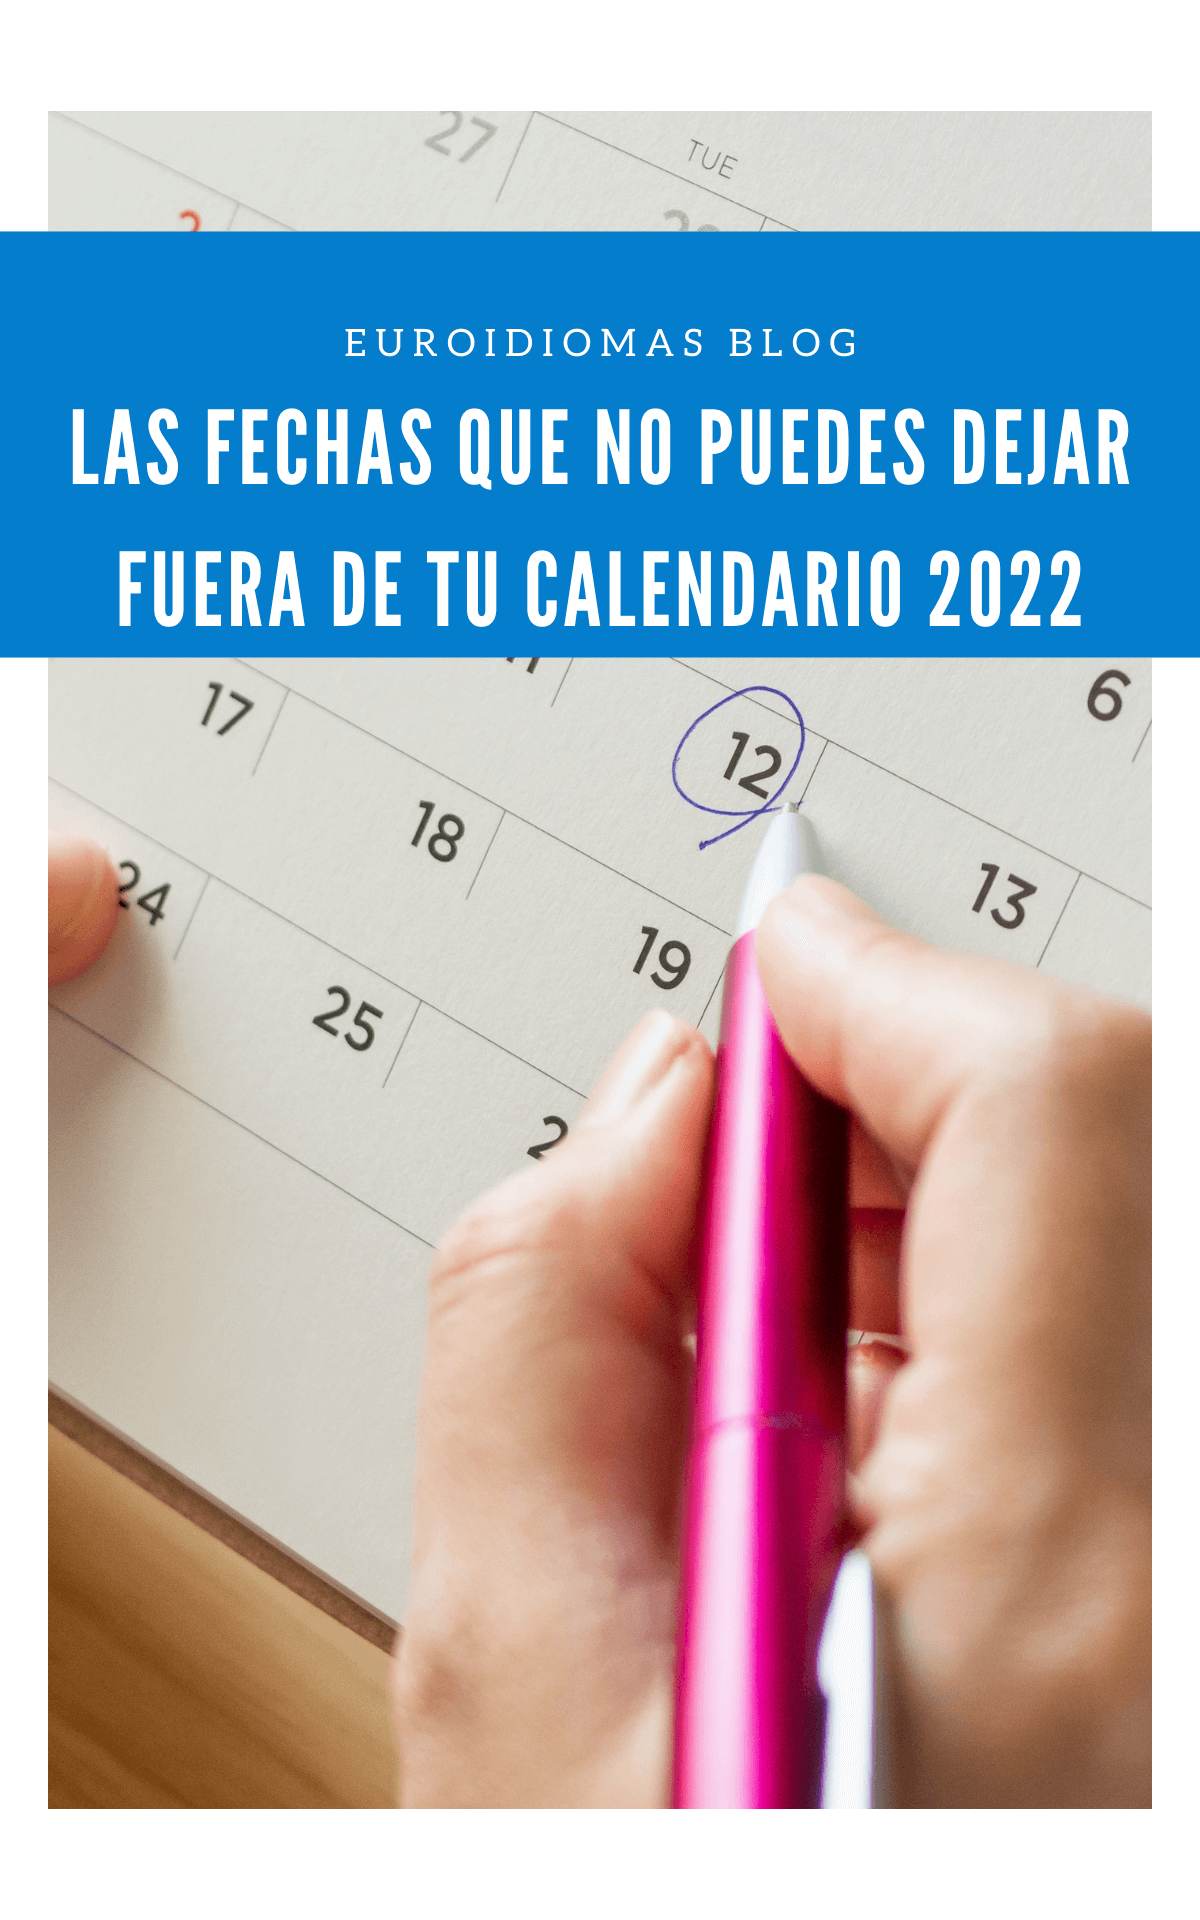 Las fechas que no puedes dejar fuera de tu calendario 2022